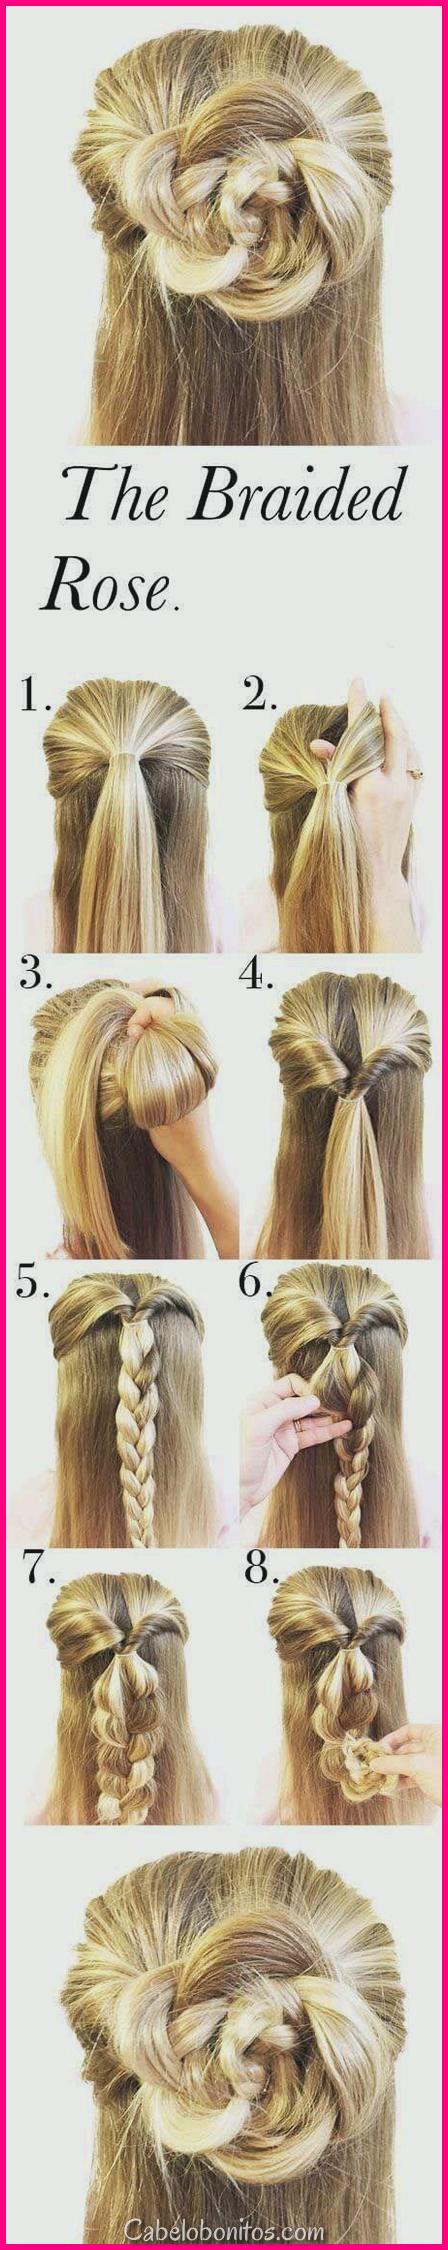 27 idéias bonitas do penteado para meninas